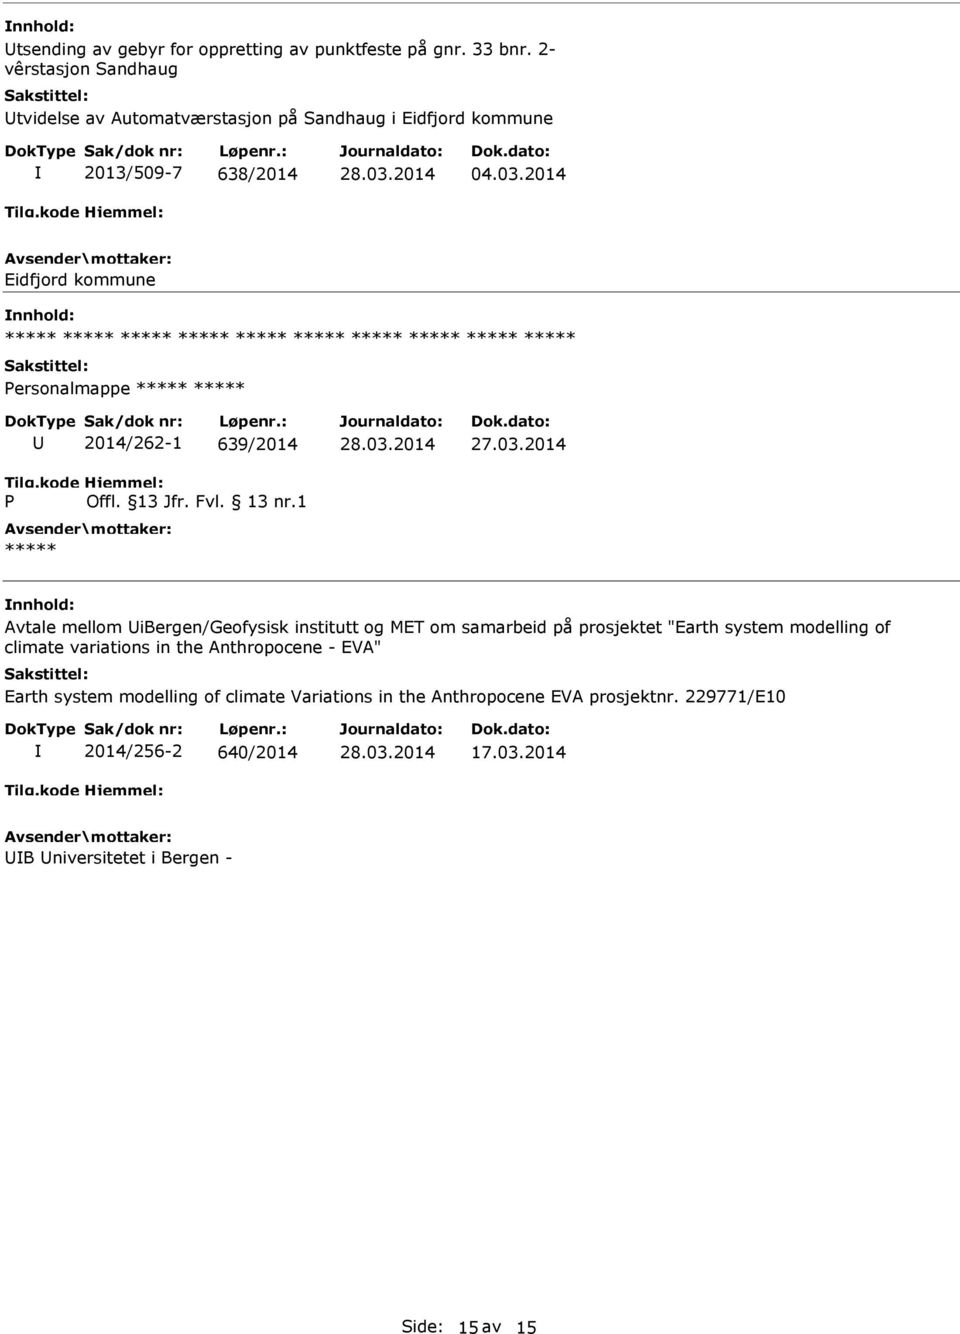 2014 Eidfjord kommune ersonalmappe 2014/262-1 639/2014 Avtale mellom ibergen/geofysisk institutt og MET om samarbeid på prosjektet